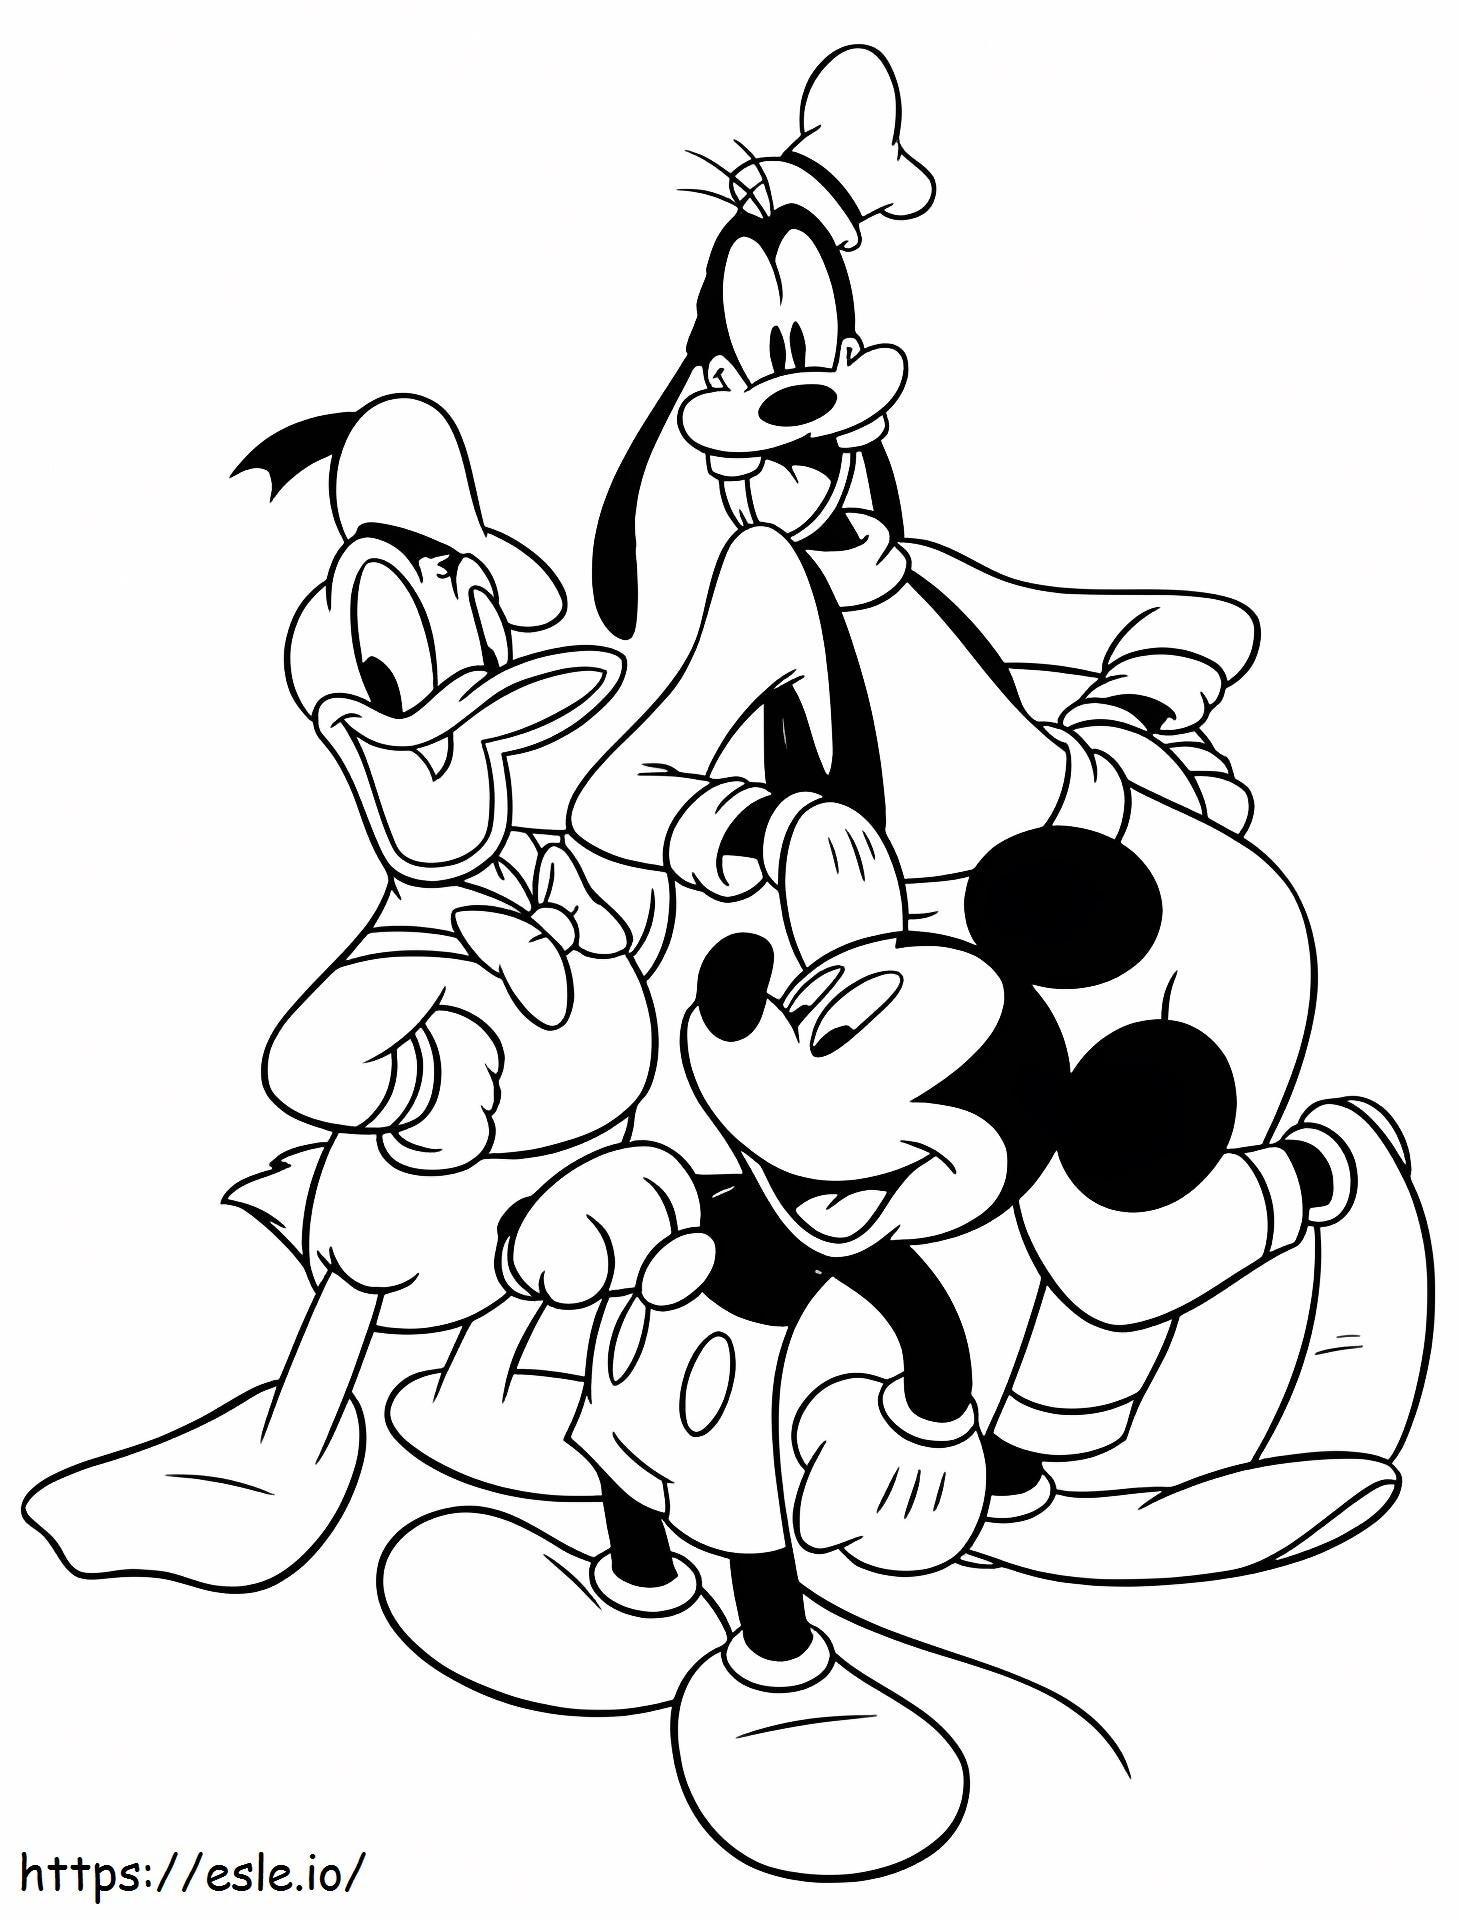 Coloriage Mickey Dingo Et Donald Png à imprimer dessin